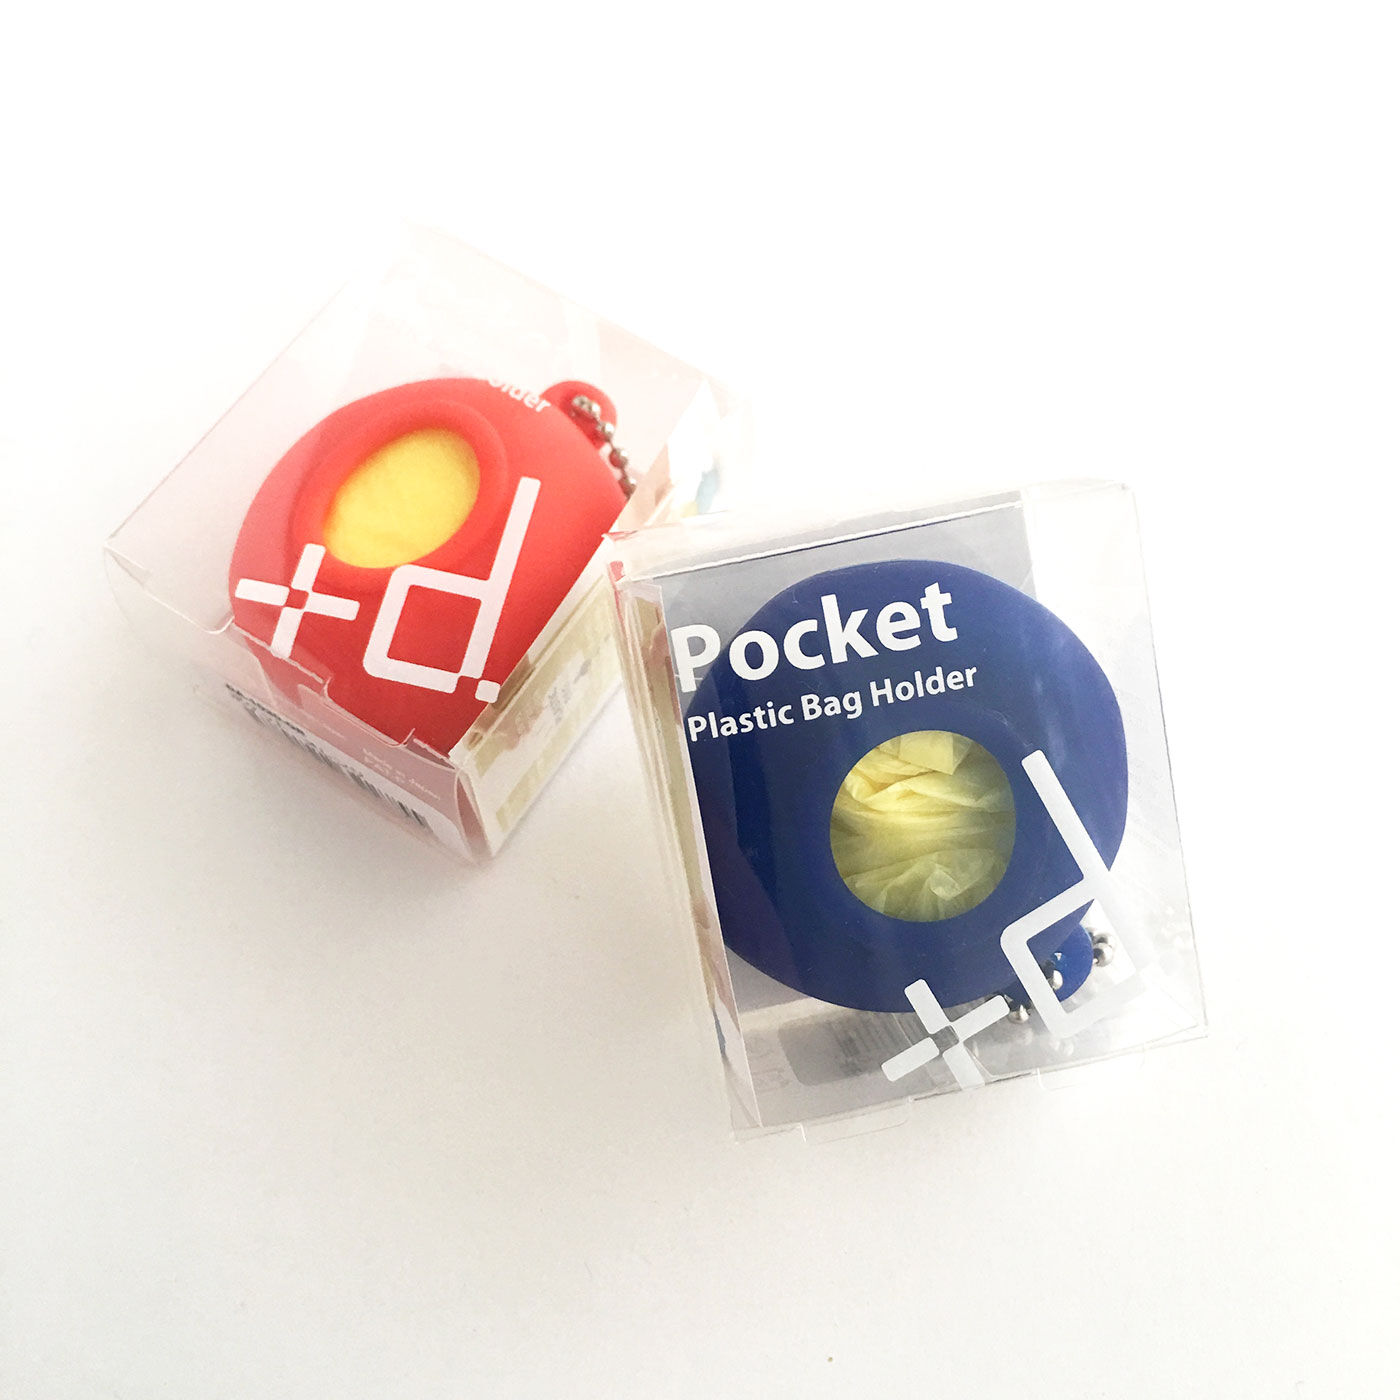 フェリシモの雑貨Kraso|レジ袋や薄手のポリ袋を入れて携帯するかわいい「ポケット」2個セット|専用ケース入り。ちょっとしたお礼など、プチギフトにもおすすめです。